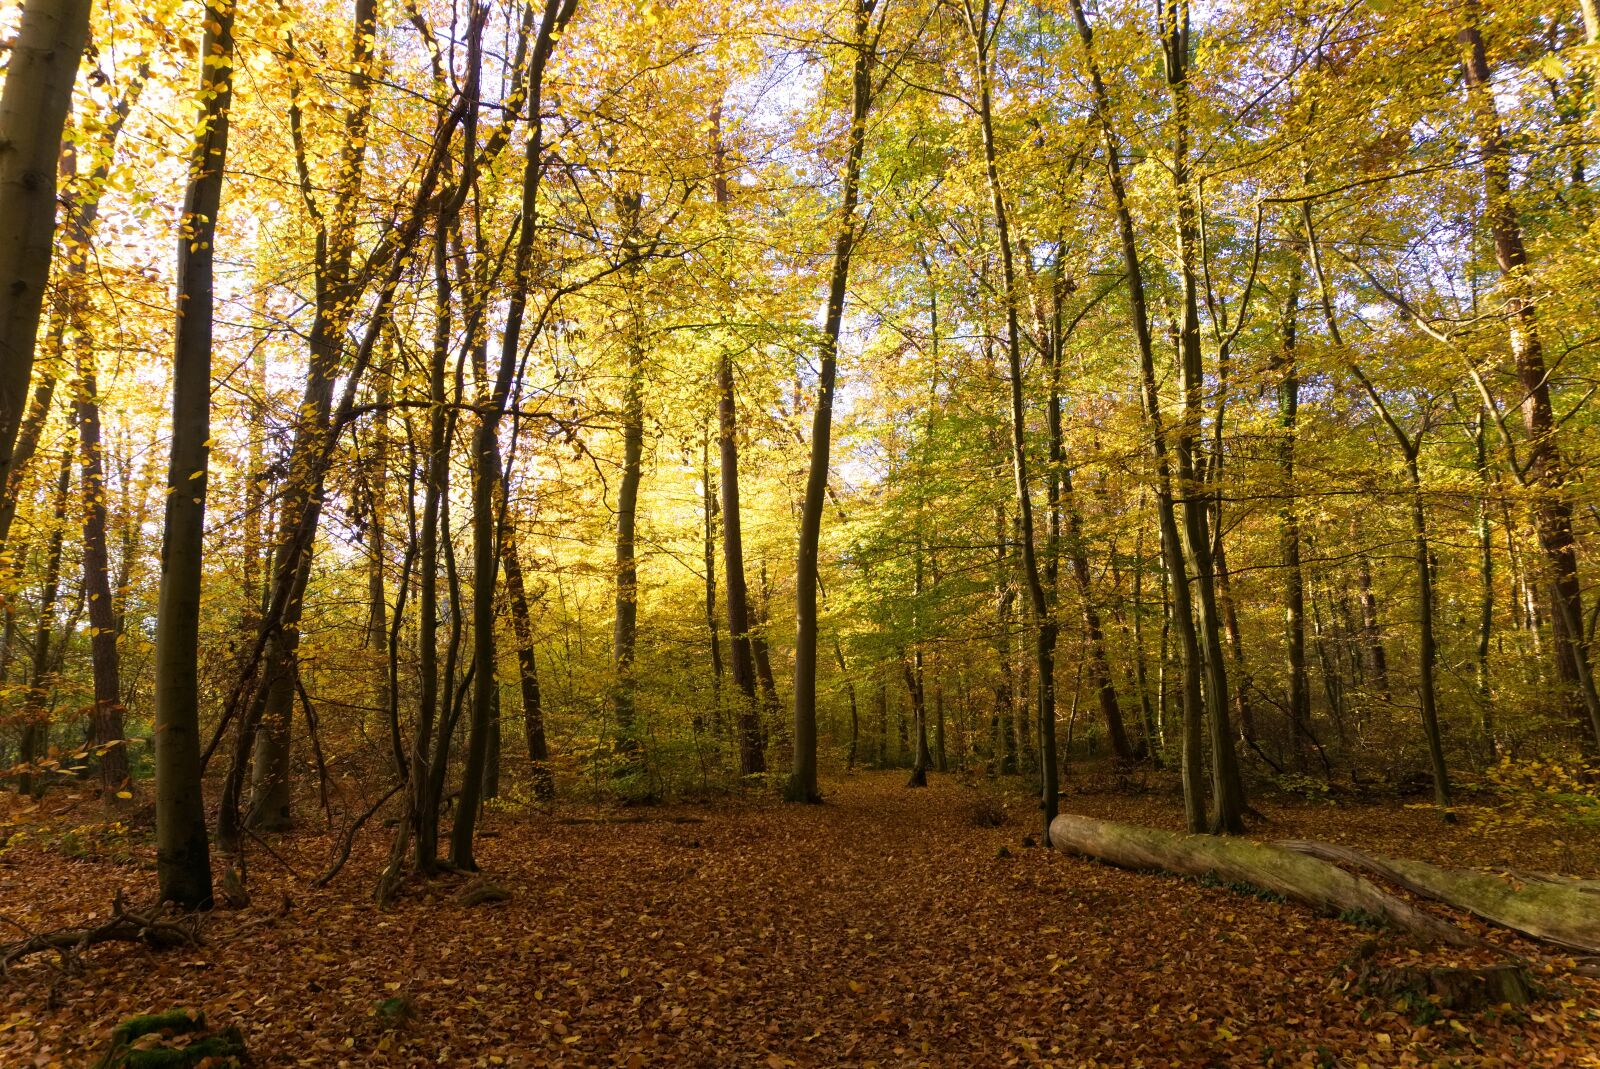 Sony a6000 sample photo. Forest, autumn, sun photography